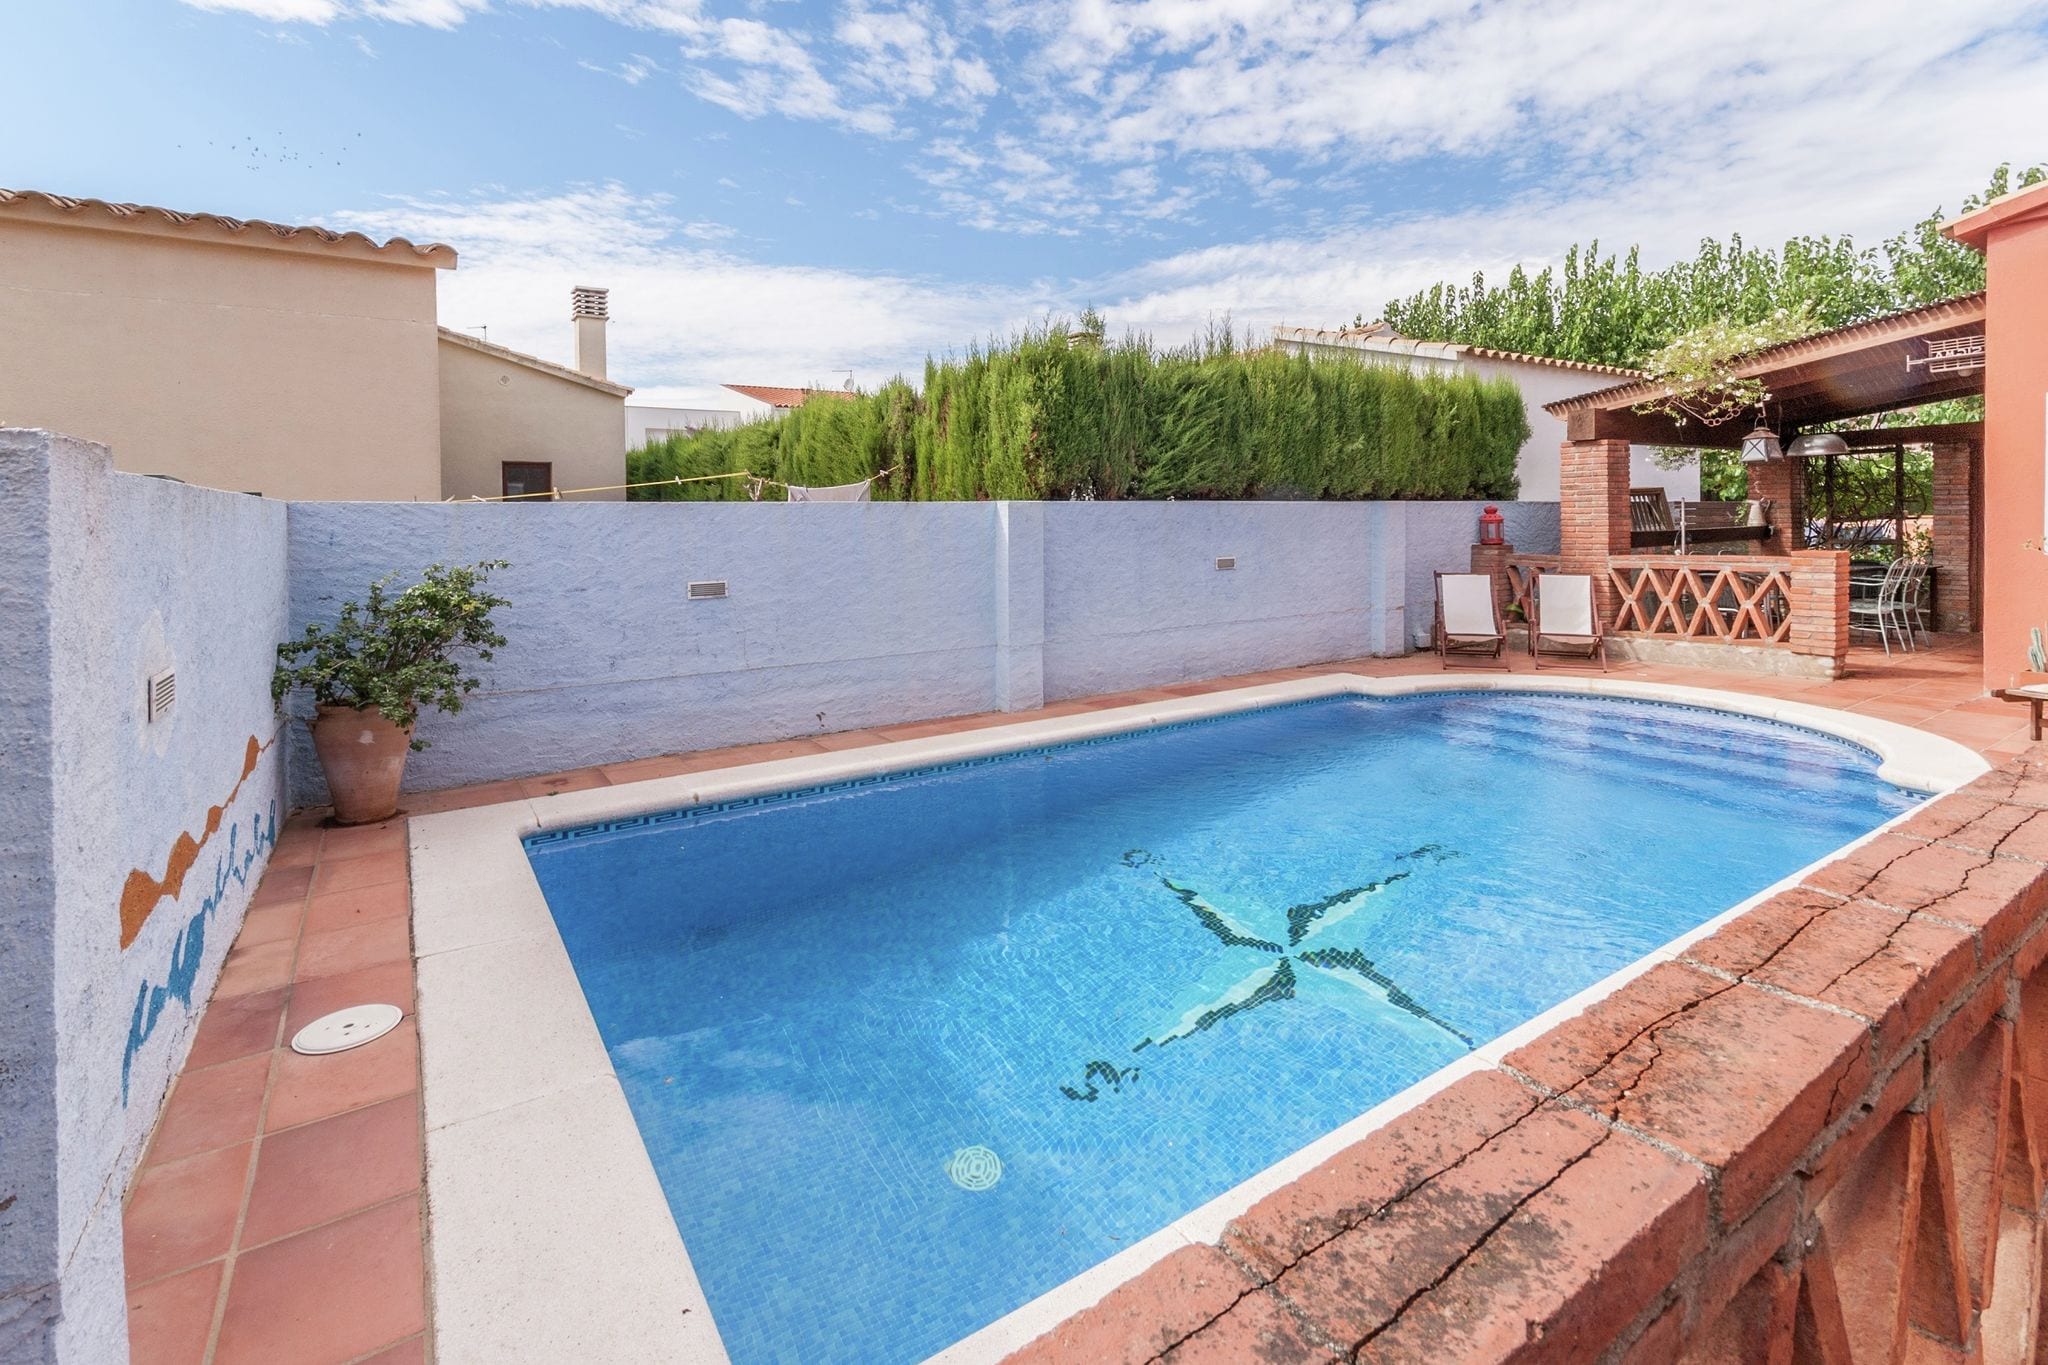 Maison de vacances cosy avec piscine à St Pere Pescador